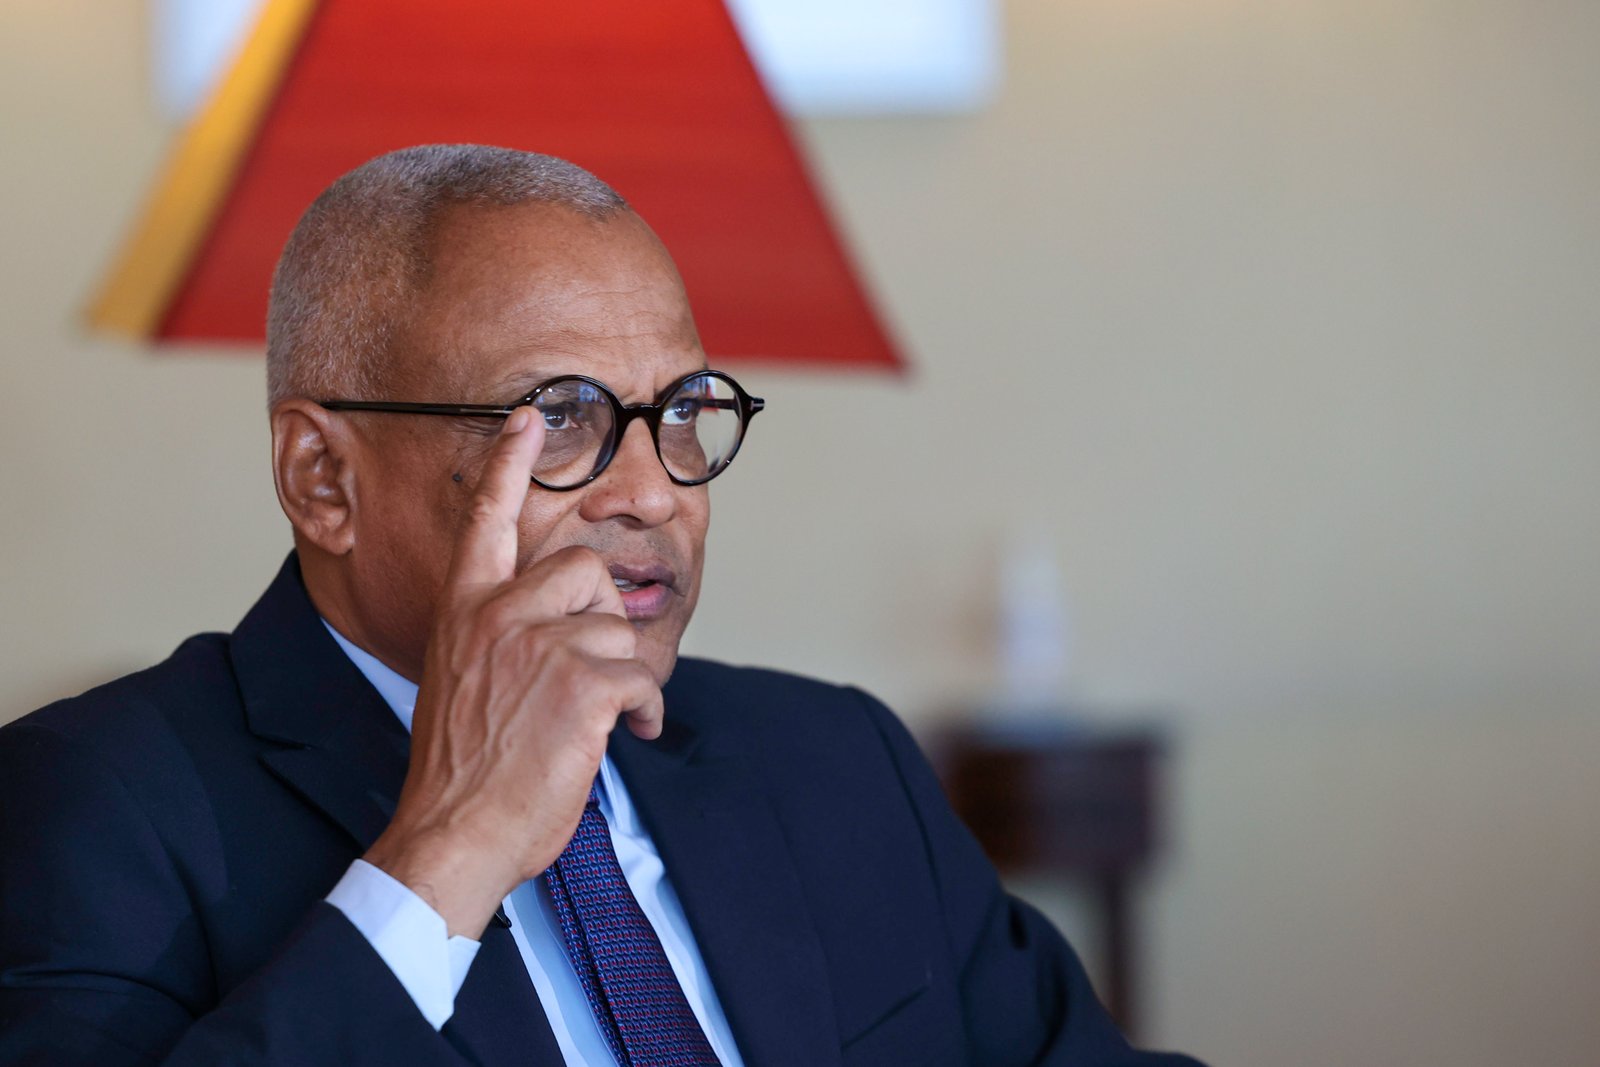 Líder do Estado caboverdiano acredita, no entanto, que o momento não é para a discussão pública Crédito: André Kosters, Lusa